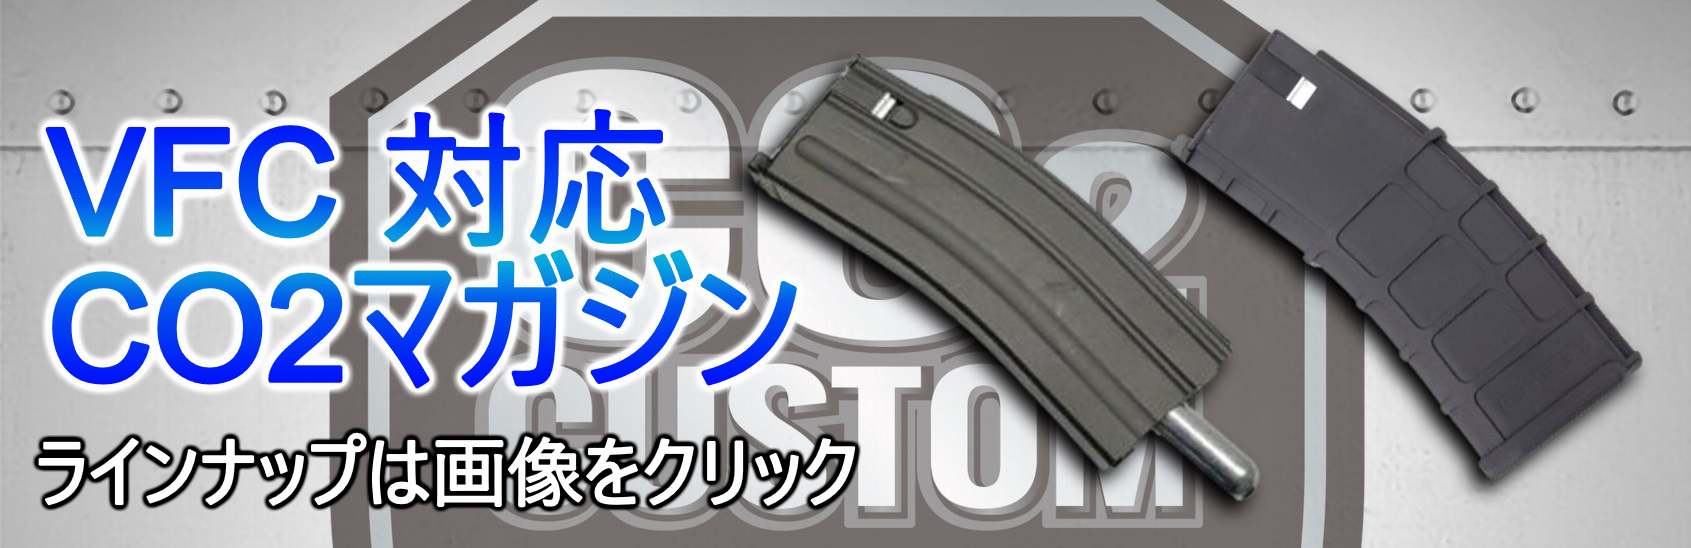 高価買蔵日本唯一無二の銃 実物/NOVESKEコンプリート DMR仕様 VFC M4ベース セラコート フルカスタム品 (東京マルイ トレポン GHK WA GBB PTW KAC ガスガン